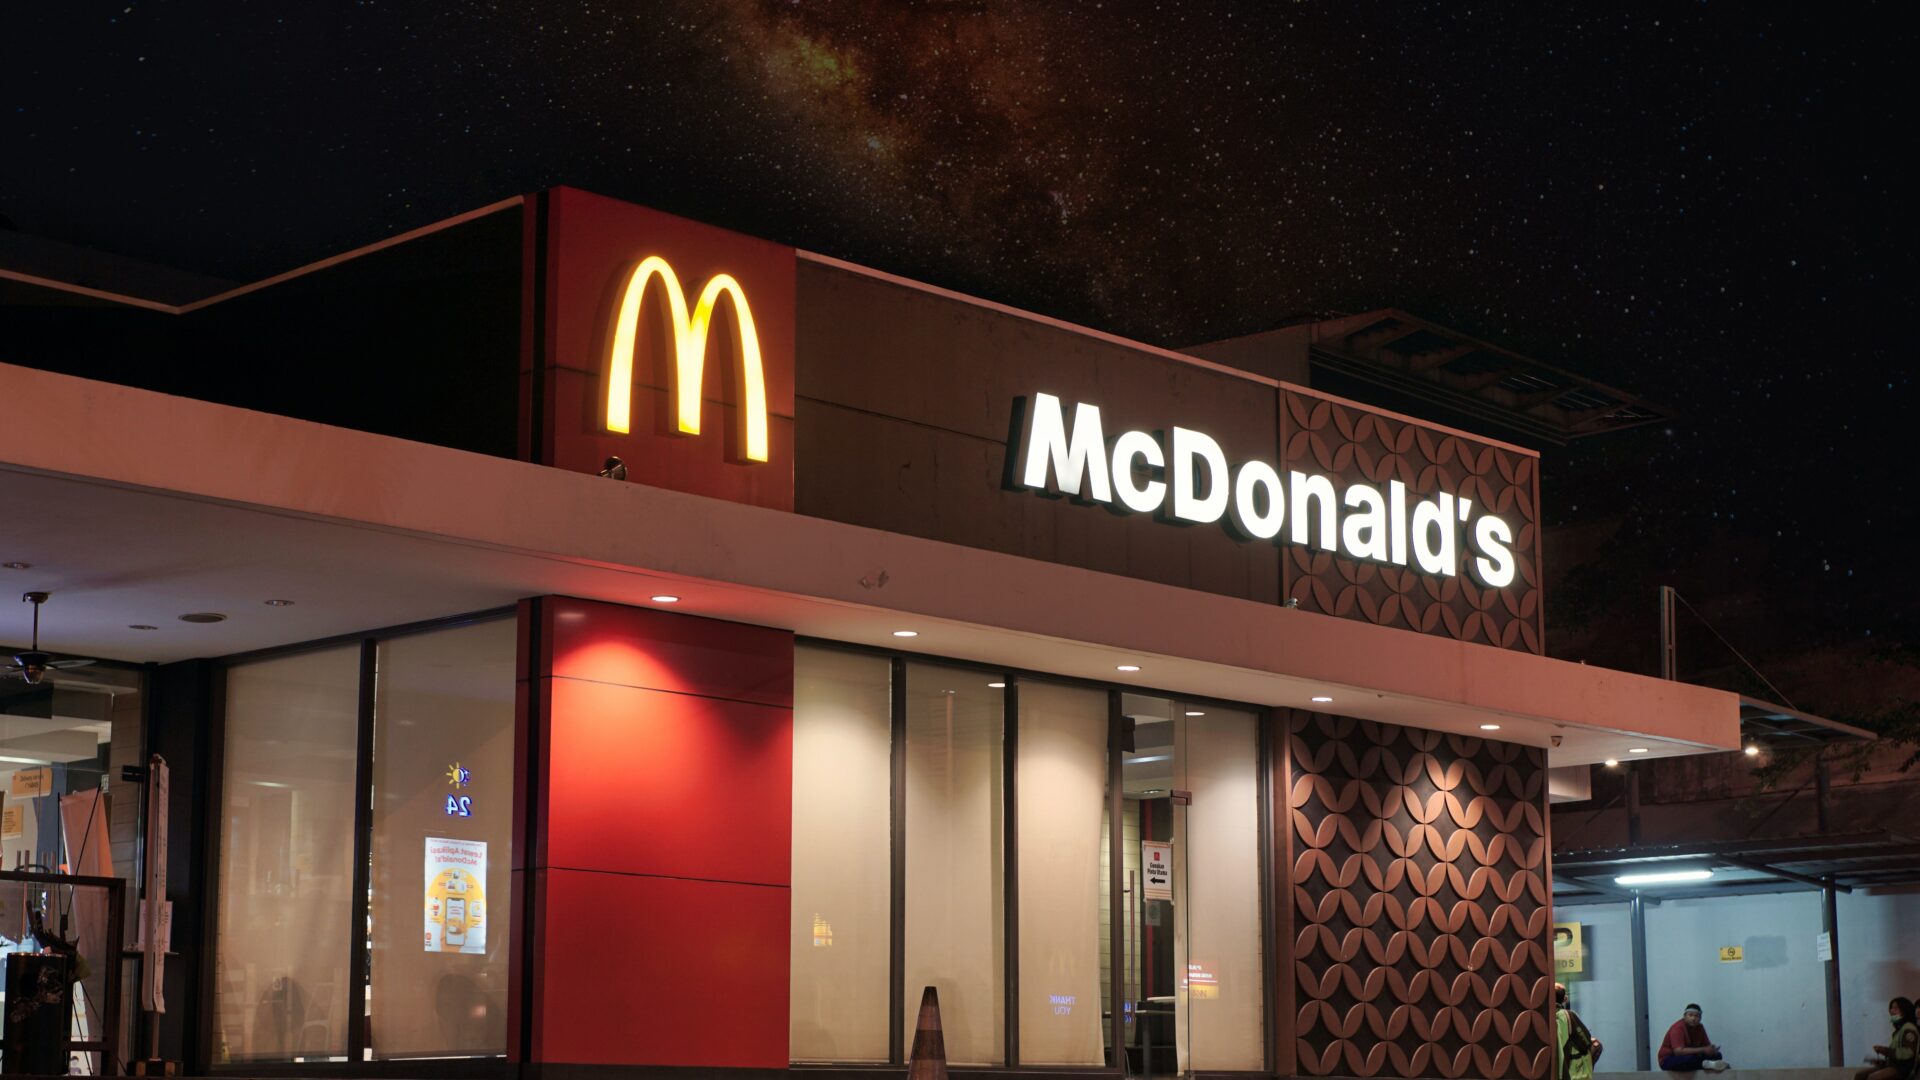 McDonalds restaurants